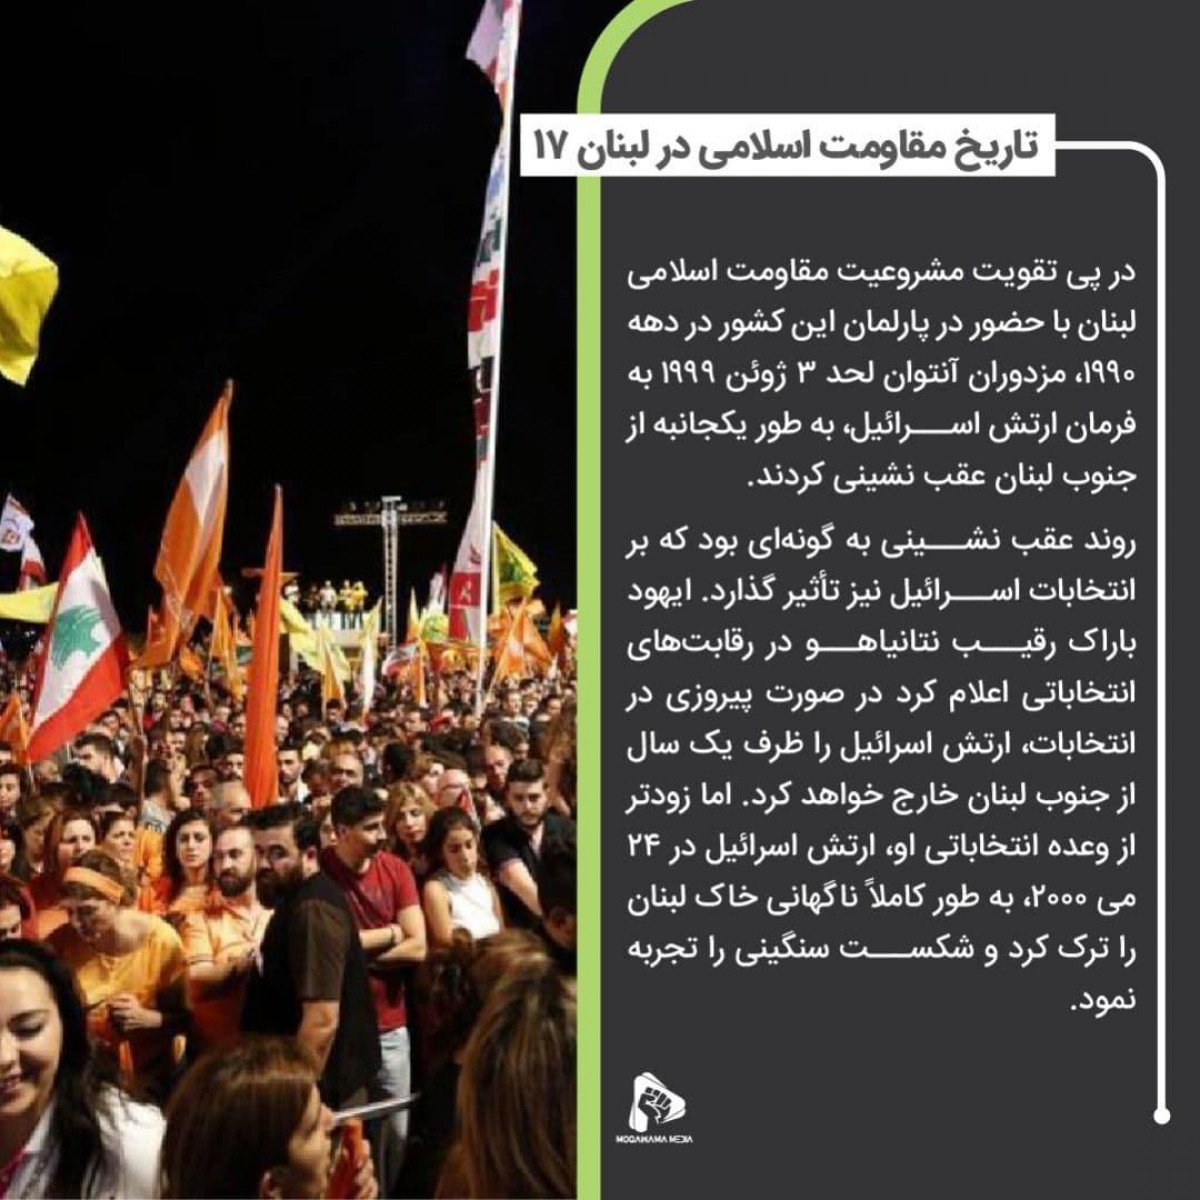 پوستر : تاریخ مقاومت اسلامی در لبنان 17